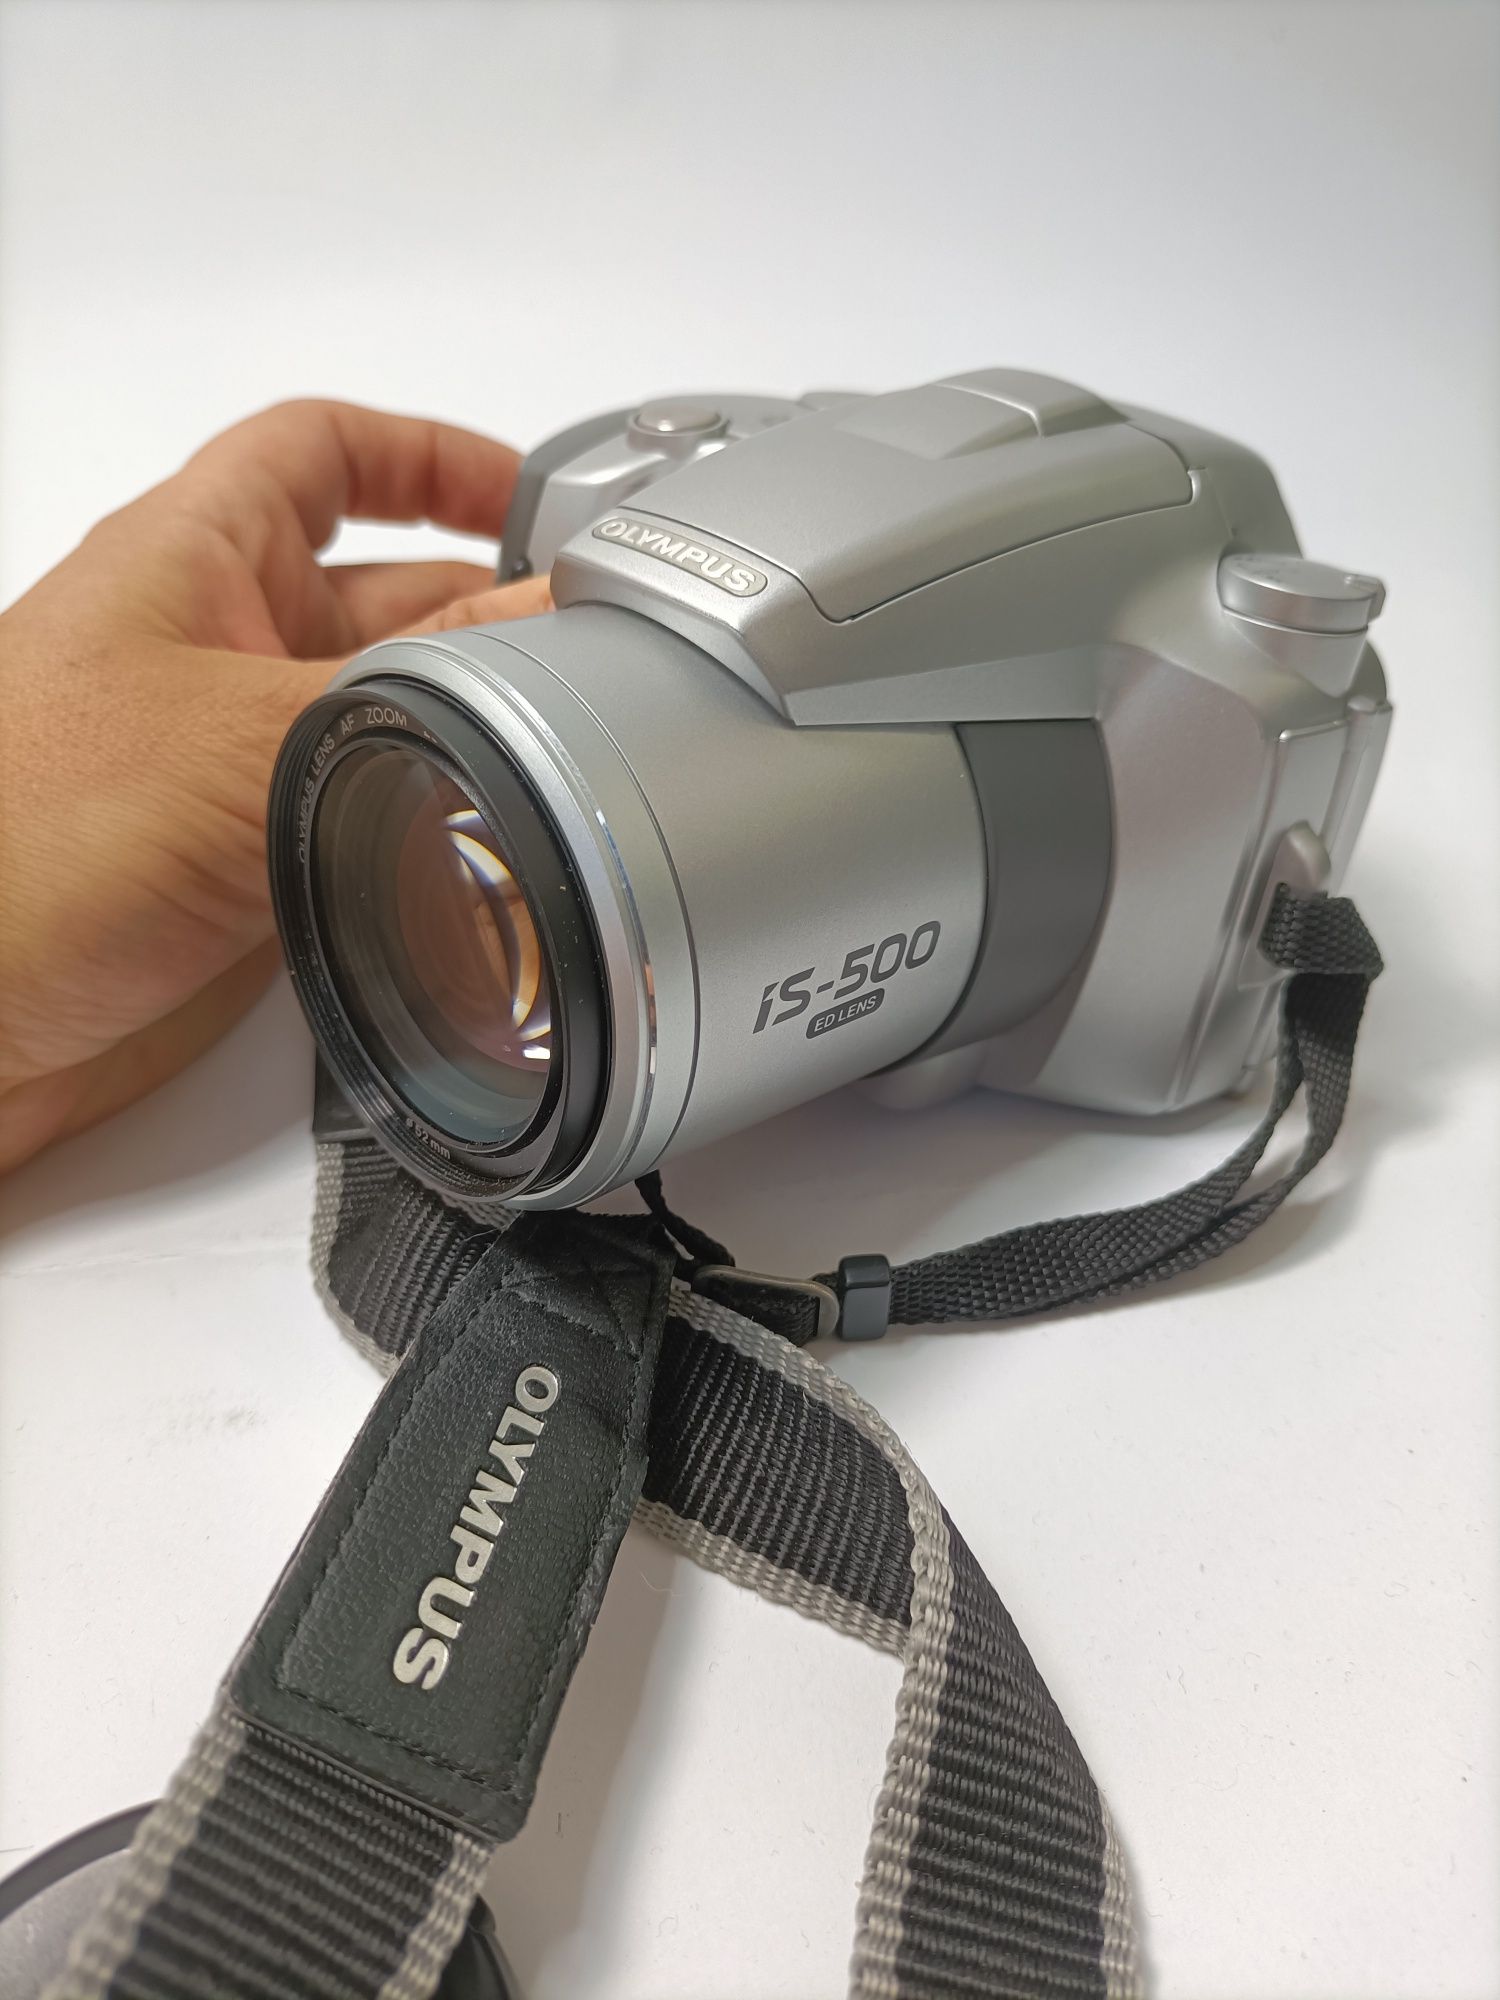 Sprawny aparat fotograficzny Olympus IS-500